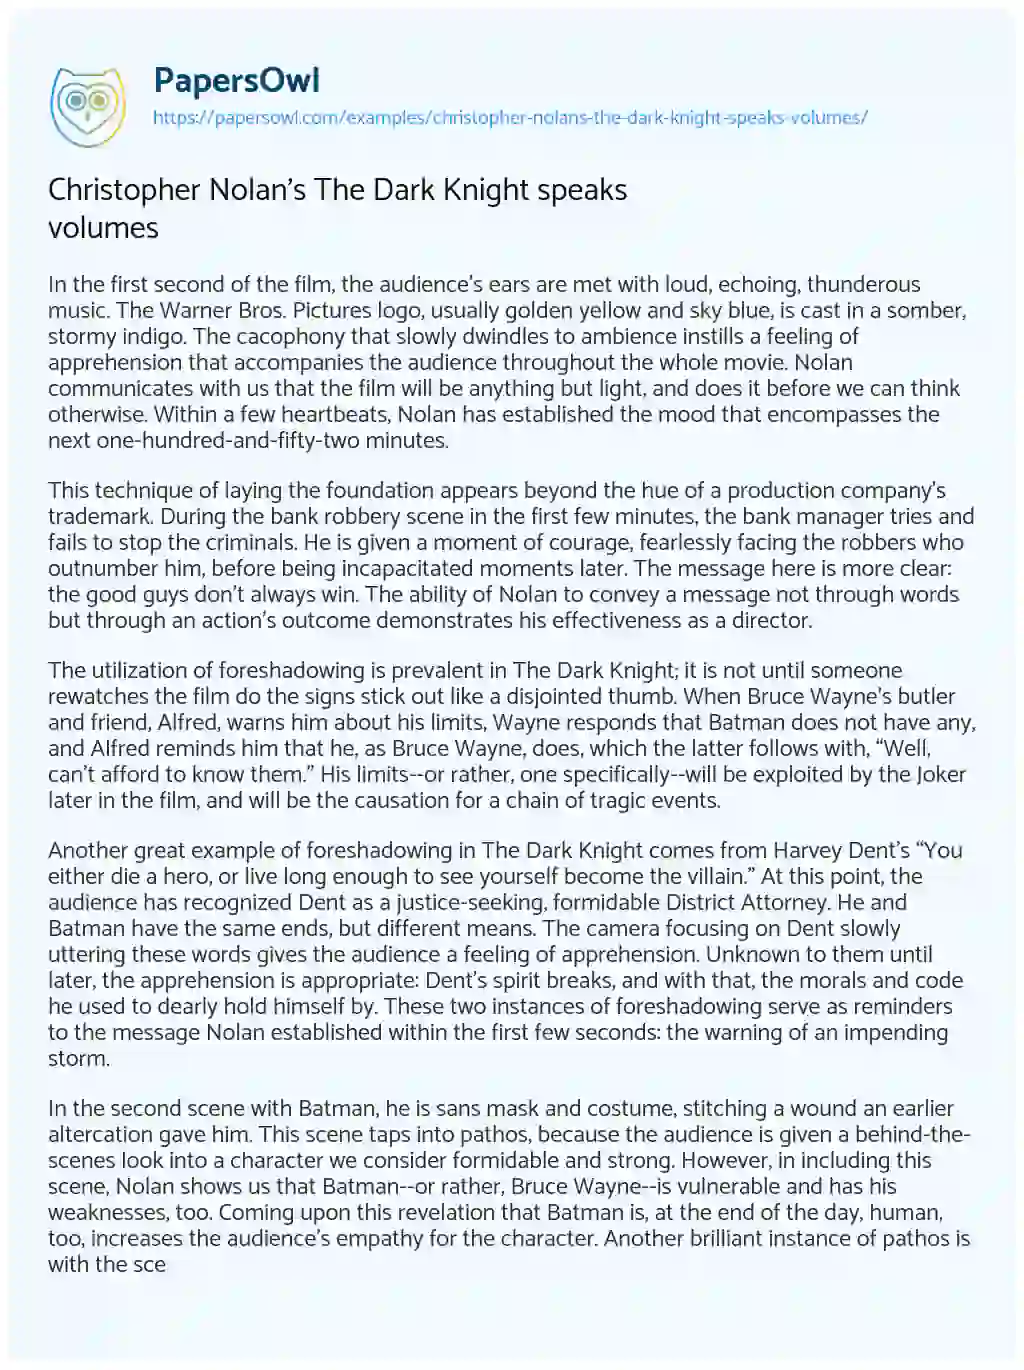 Christopher Nolan’s the Dark Knight Speaks Volumes essay